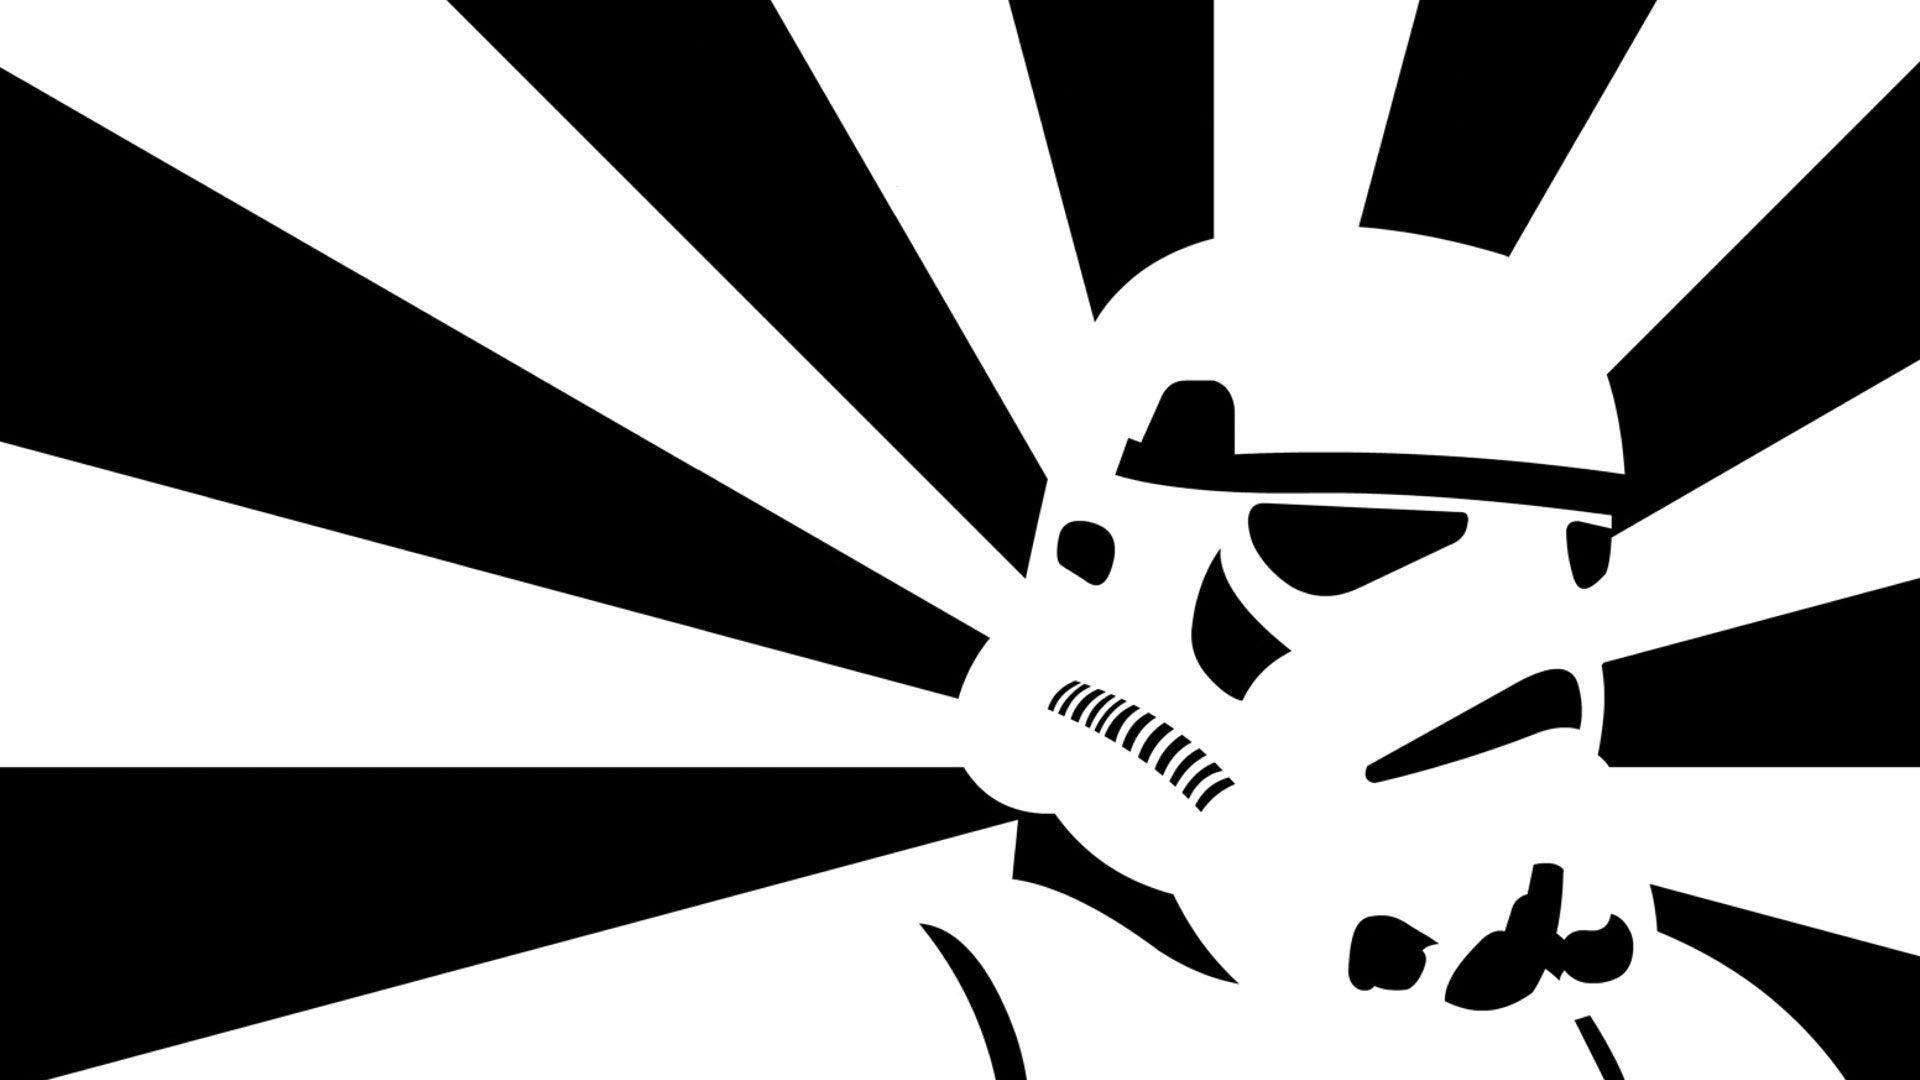 Wallpaper Star Wars Stormtroopers Contrast 1920x1080 taken